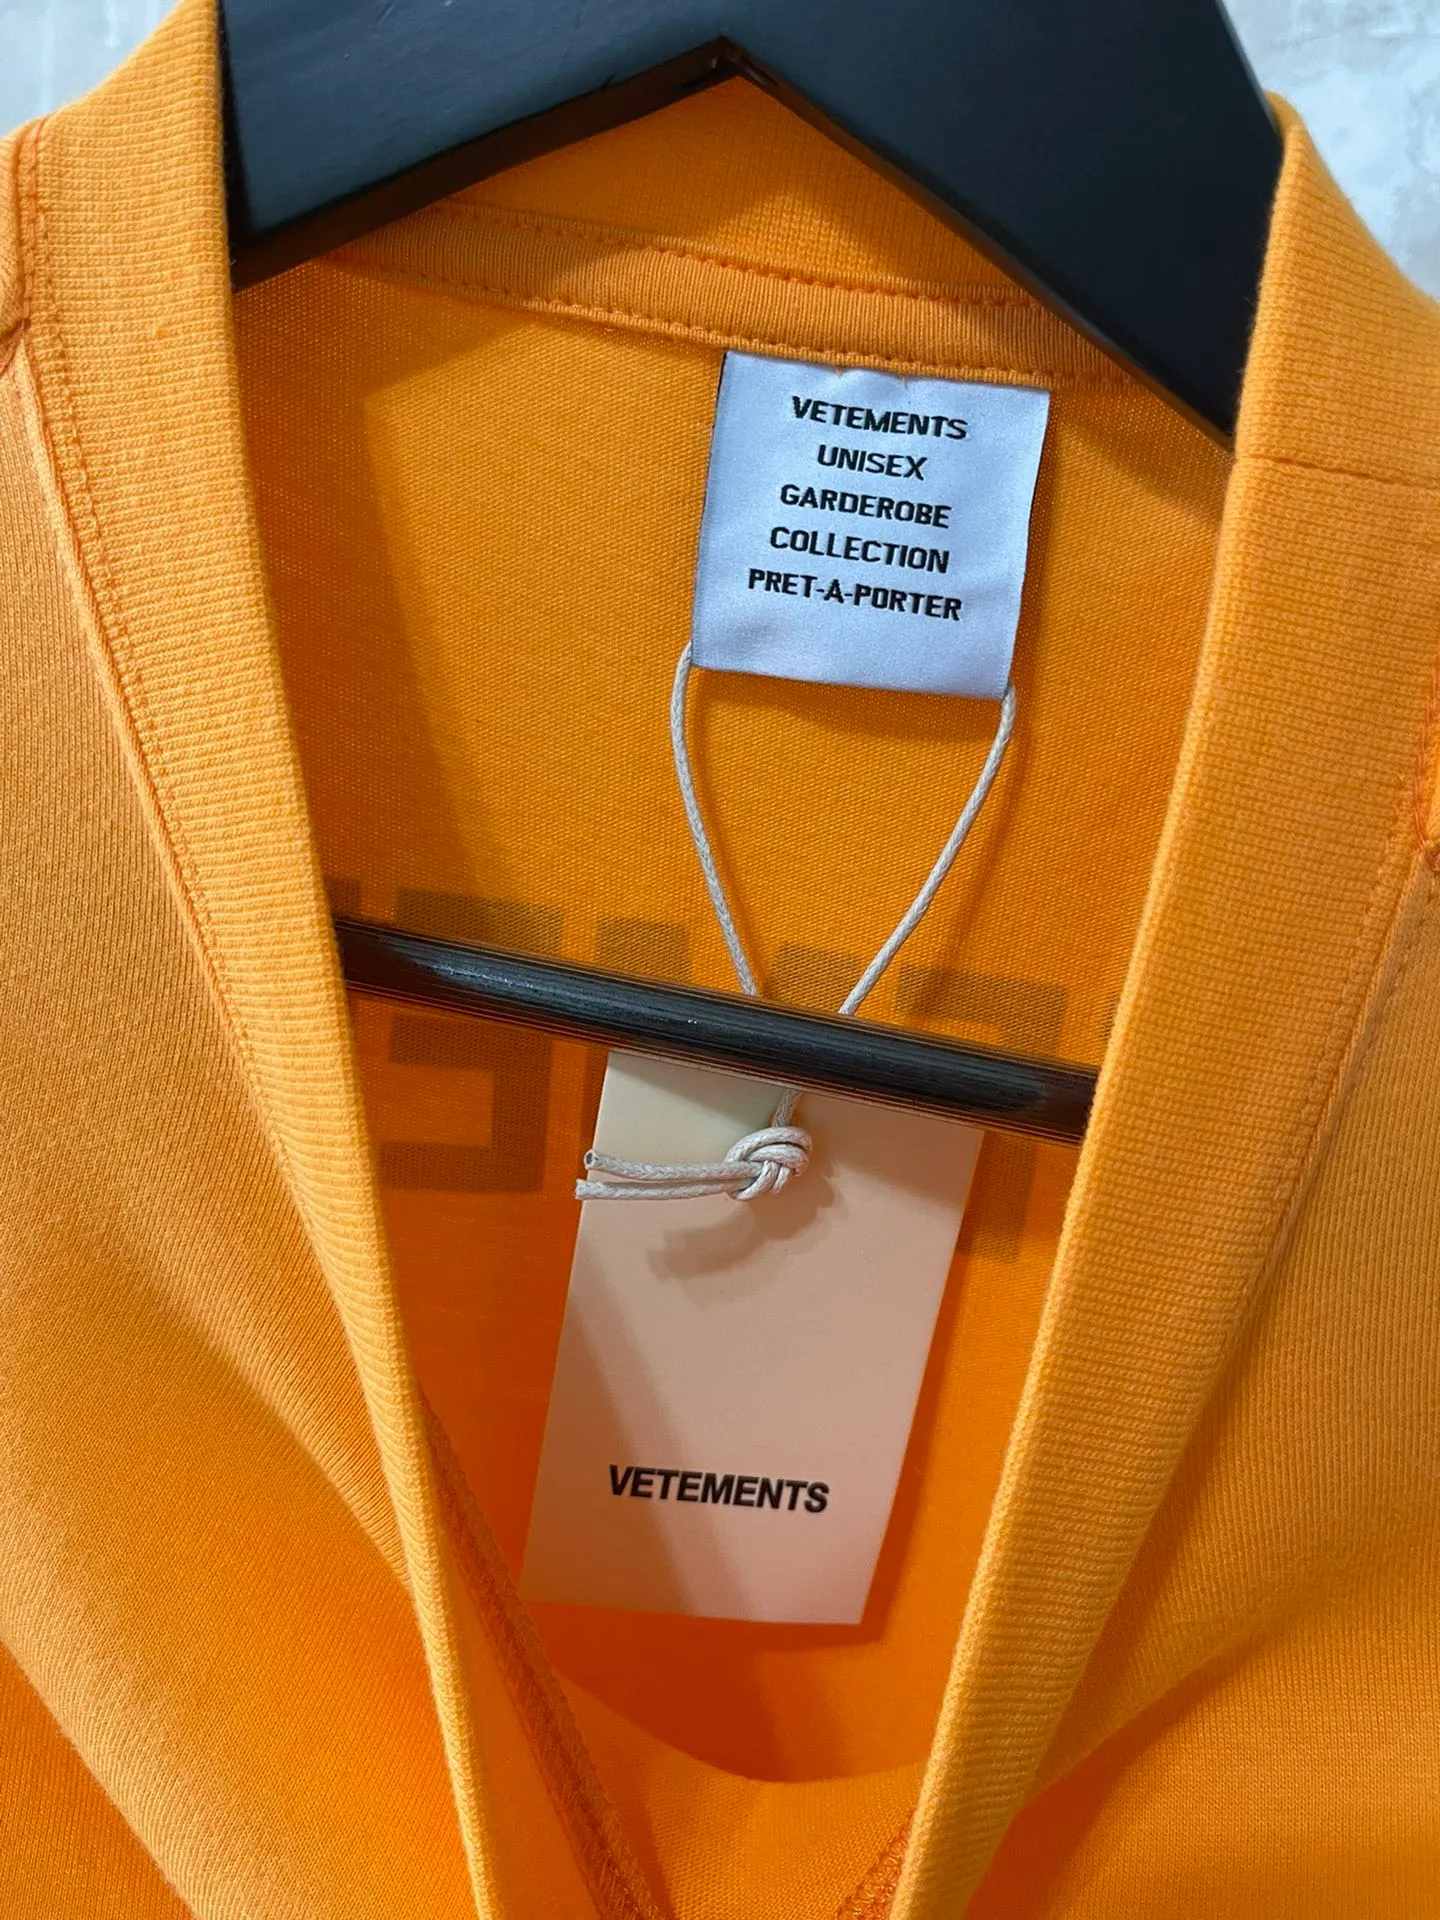 Imprimé décontracté orange t-shirt hommes femmes femmes de haute qualité polices réfléchissantes tee surdimenseur tops épais tissu